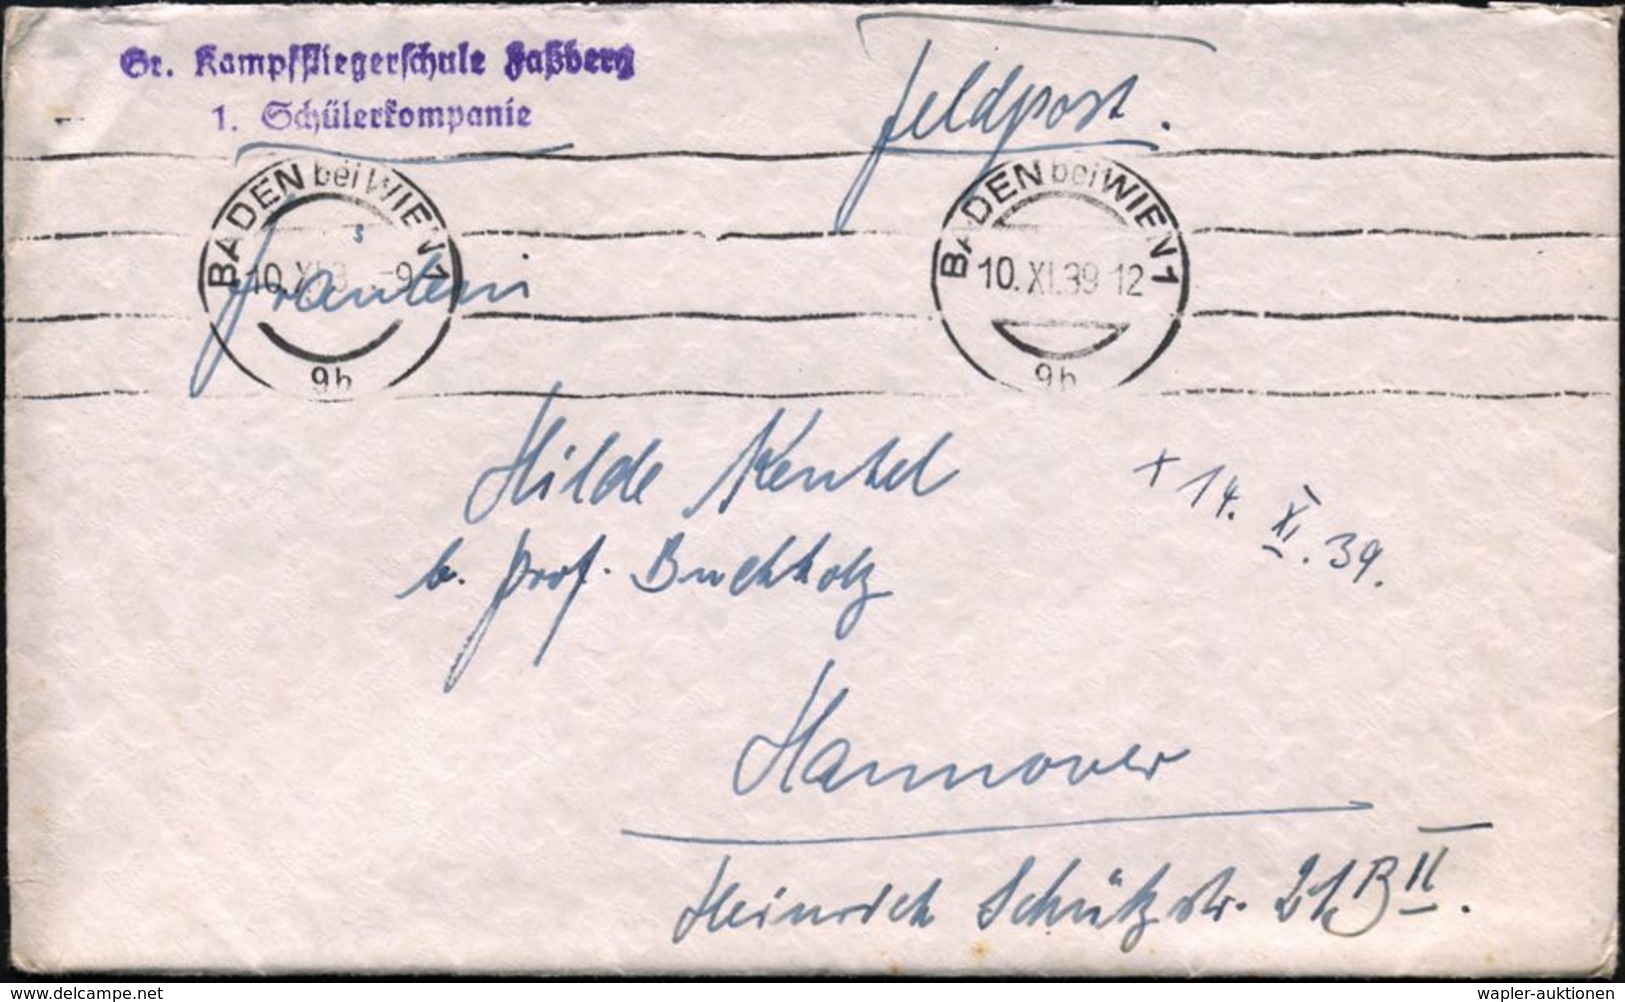 BADEN Bei WIEN 1/ 9b 1939 (10.11.) Aptierter, Ehem. österr. Bd.MaSt (4 Wellen) + Viol. 2L: Gr. Kampffliegerschule Faßber - Aerei